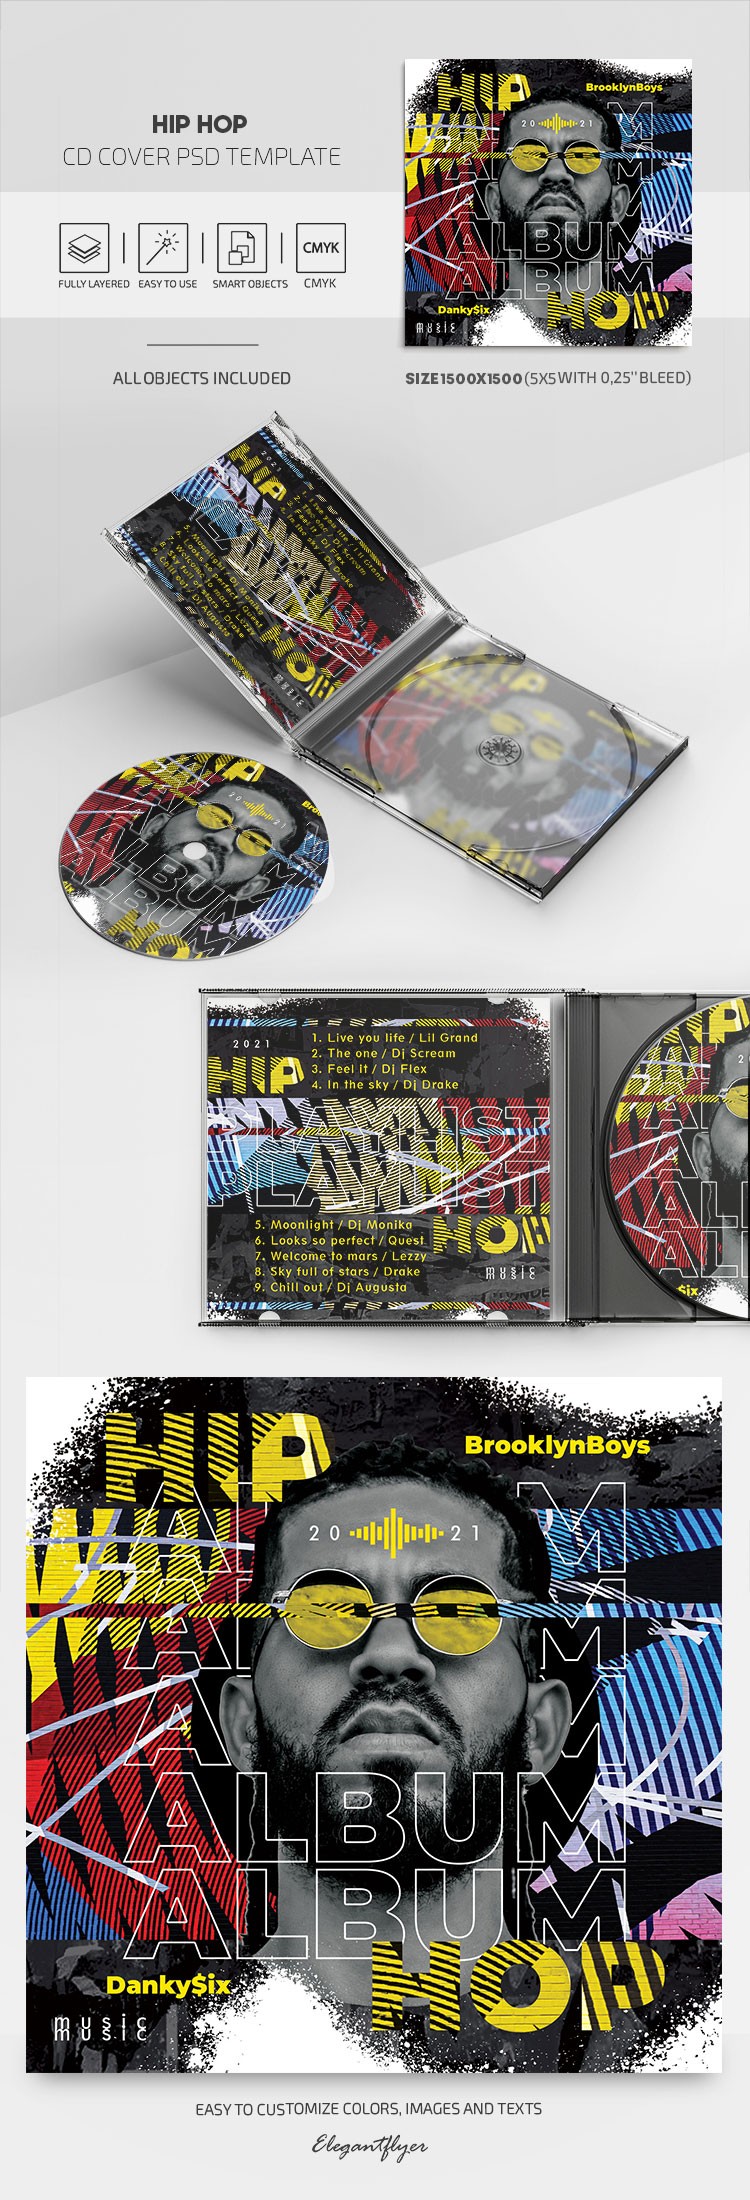 Okładka CD hip-hopowego by ElegantFlyer